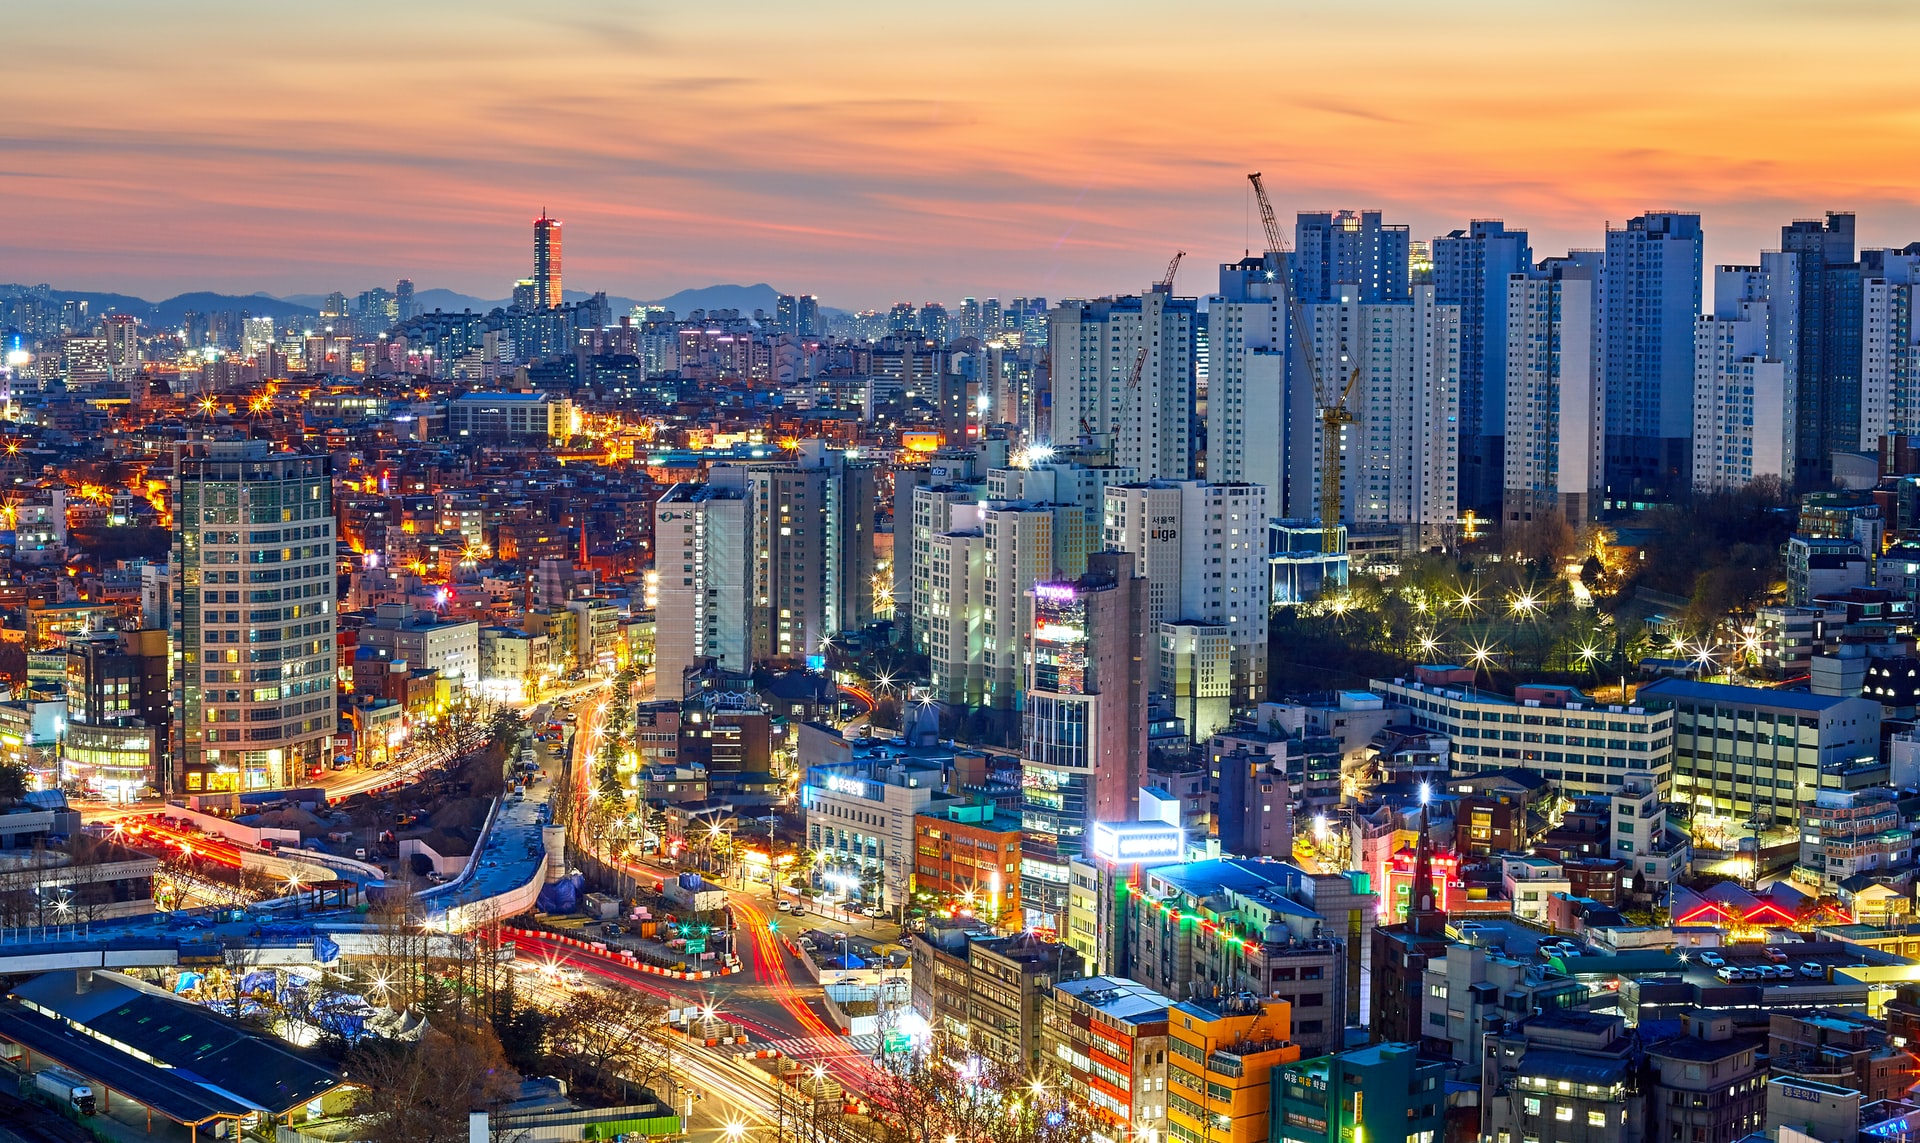 Sindicatos e inovações nas cooperativas de plataforma na Coréia do Sul